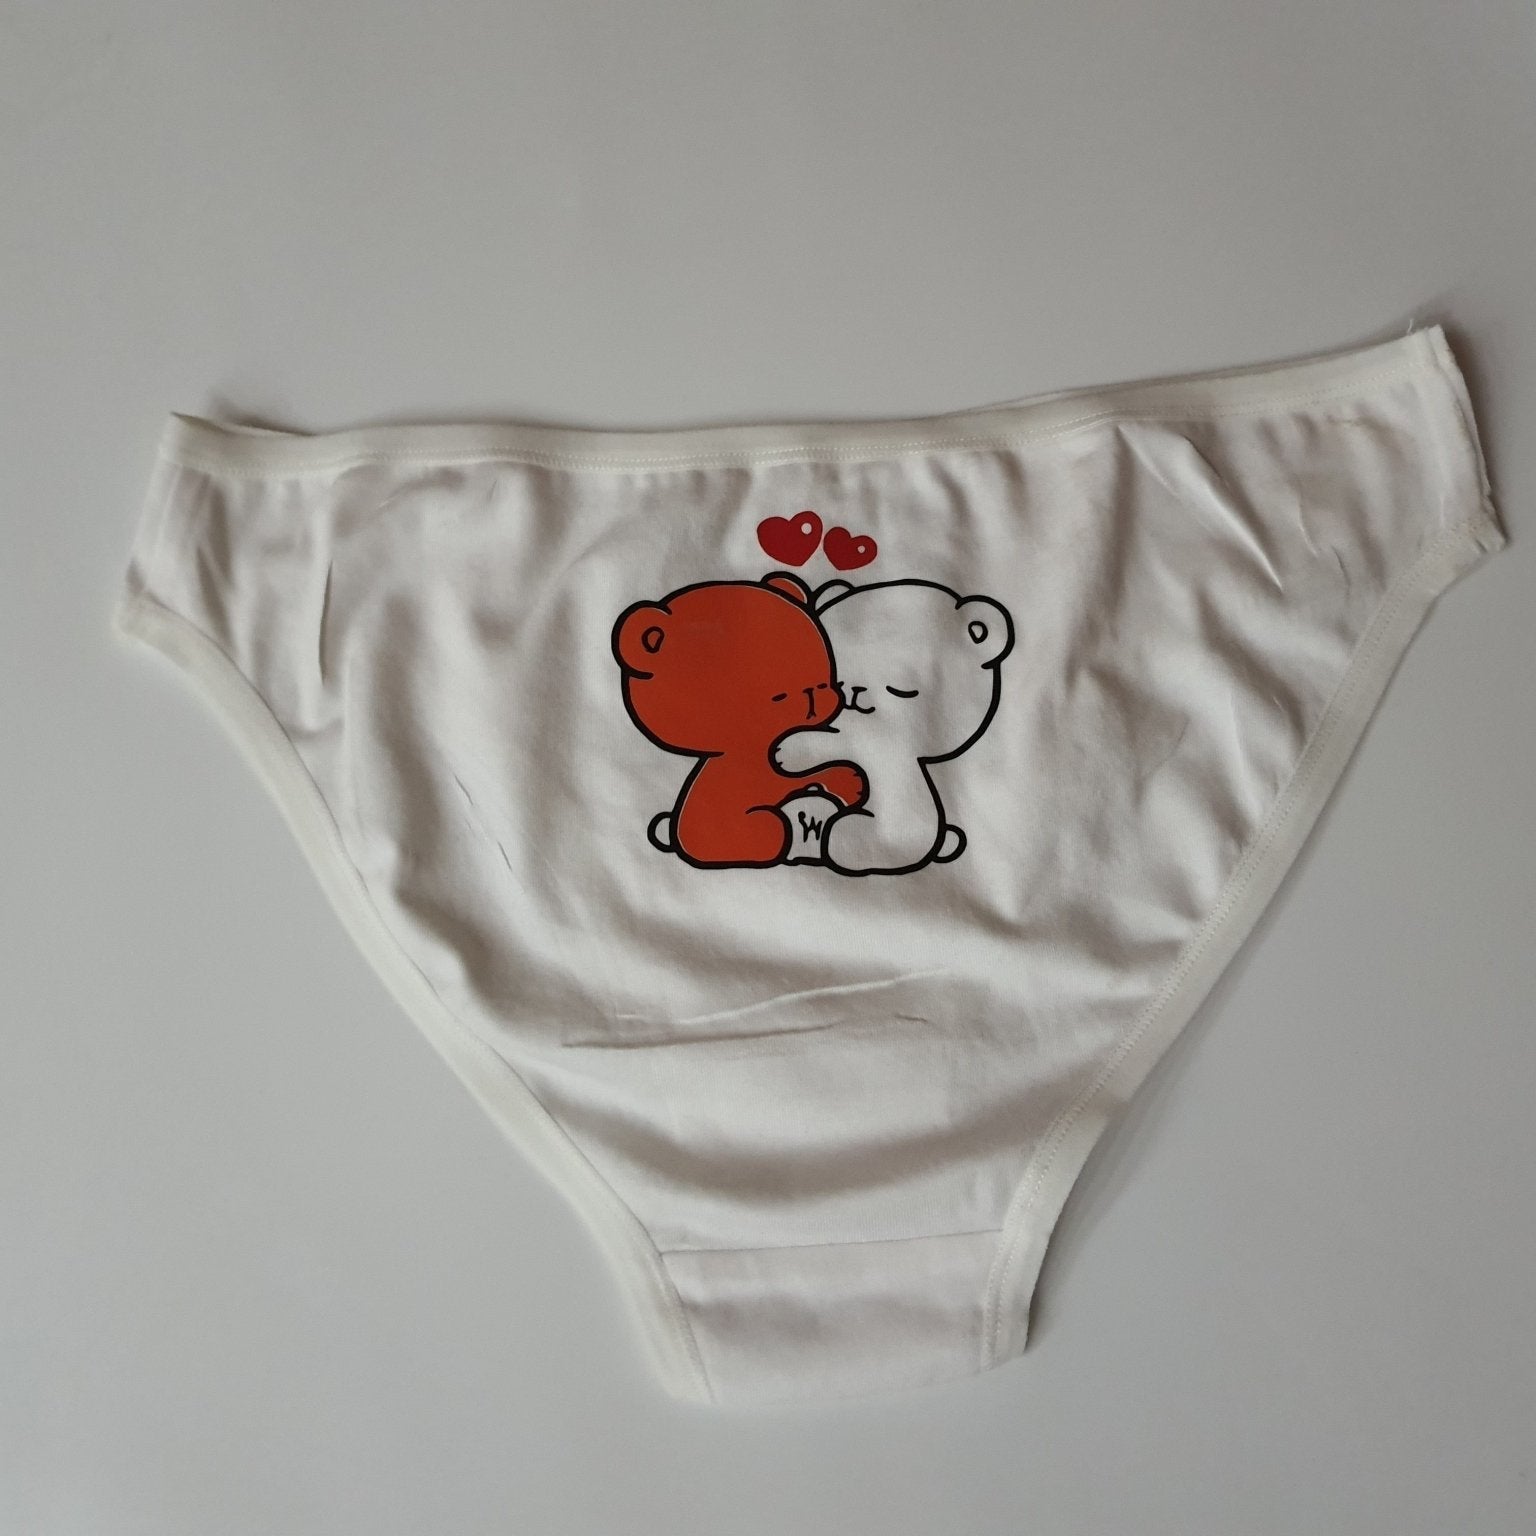 Women underwear - Puppies - Etba3lly